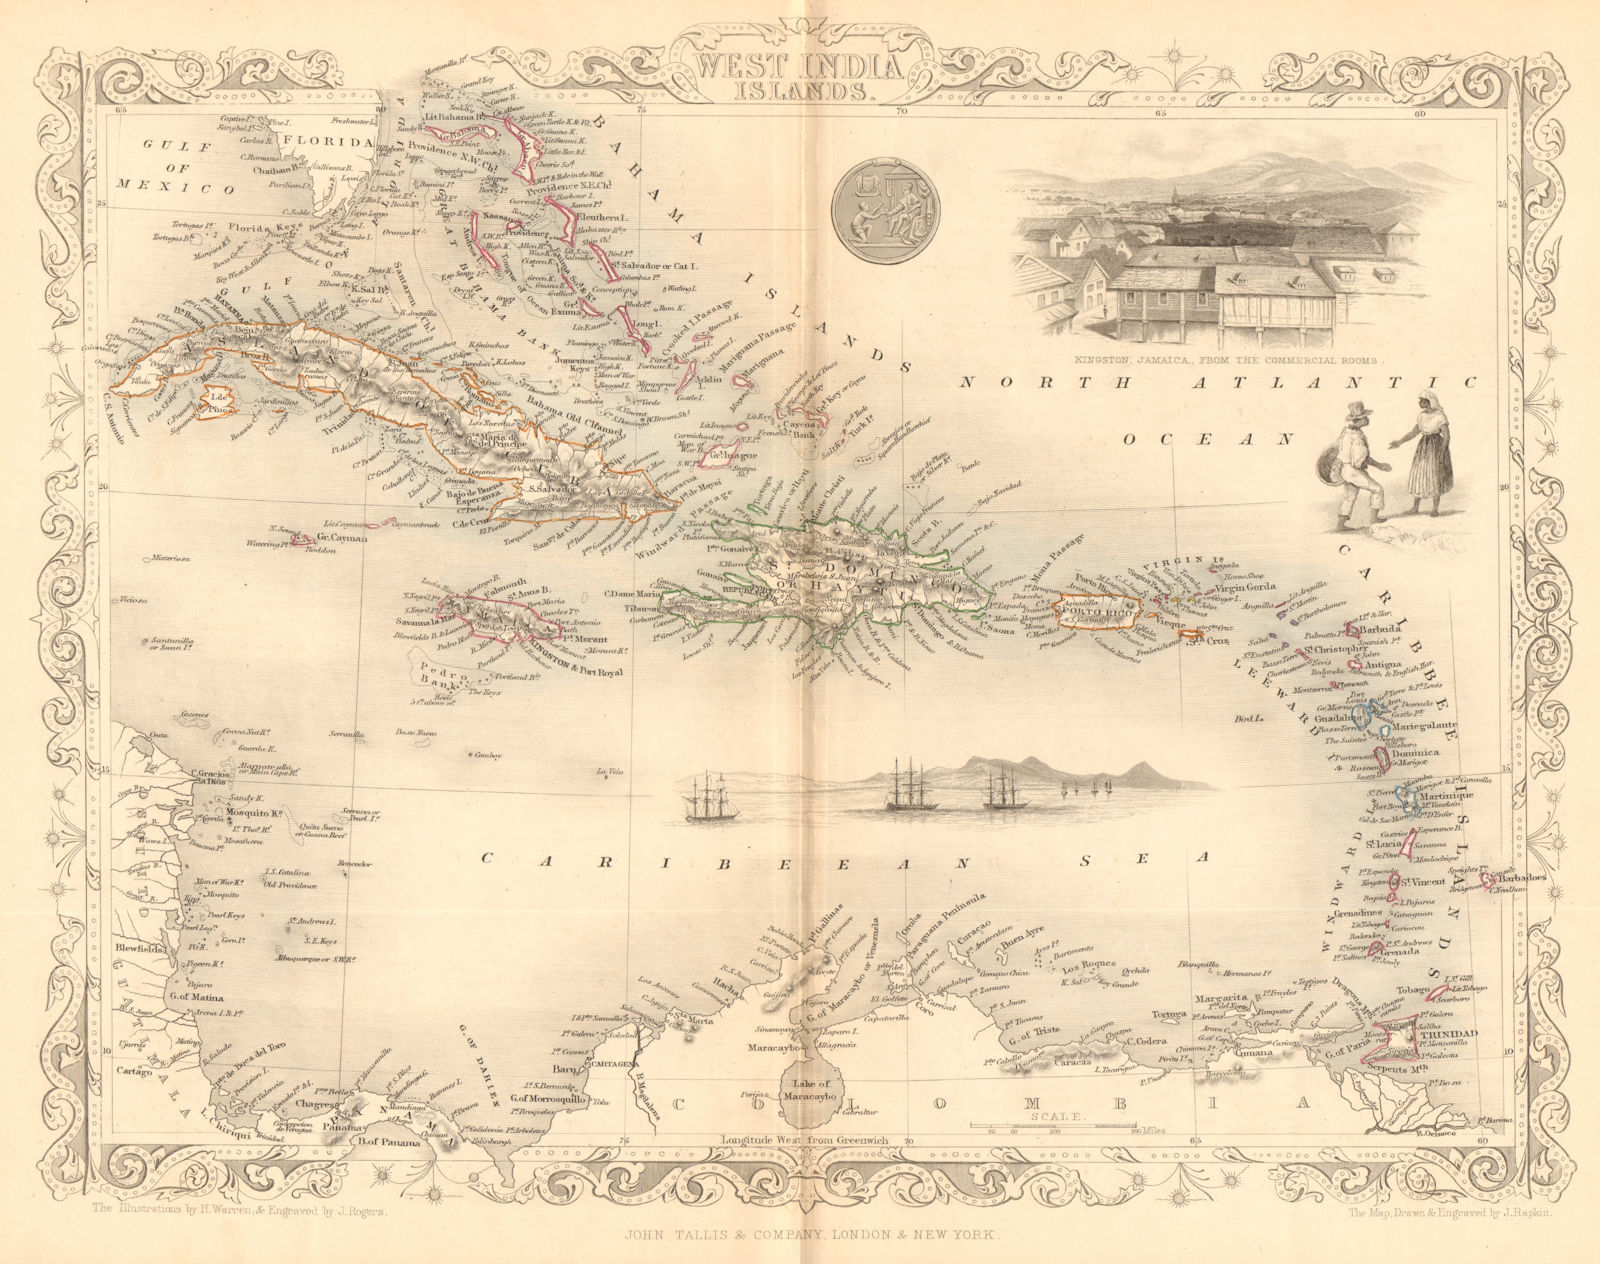 'WEST INDIA ISLANDS'. Caribbean Indies Antilles Bahamas. TALLIS/RAPKIN 1849 map